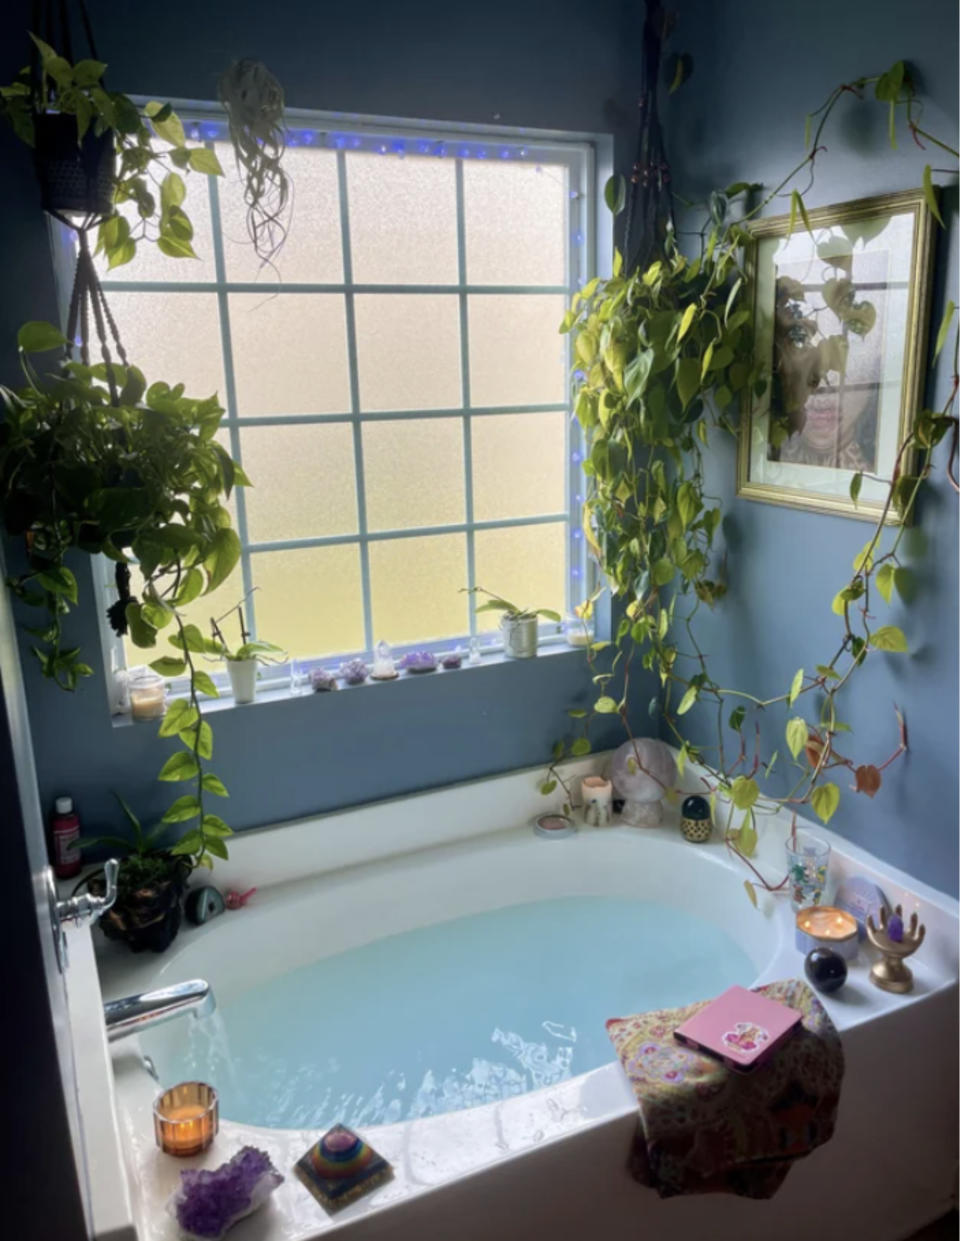 A cozy bathtub